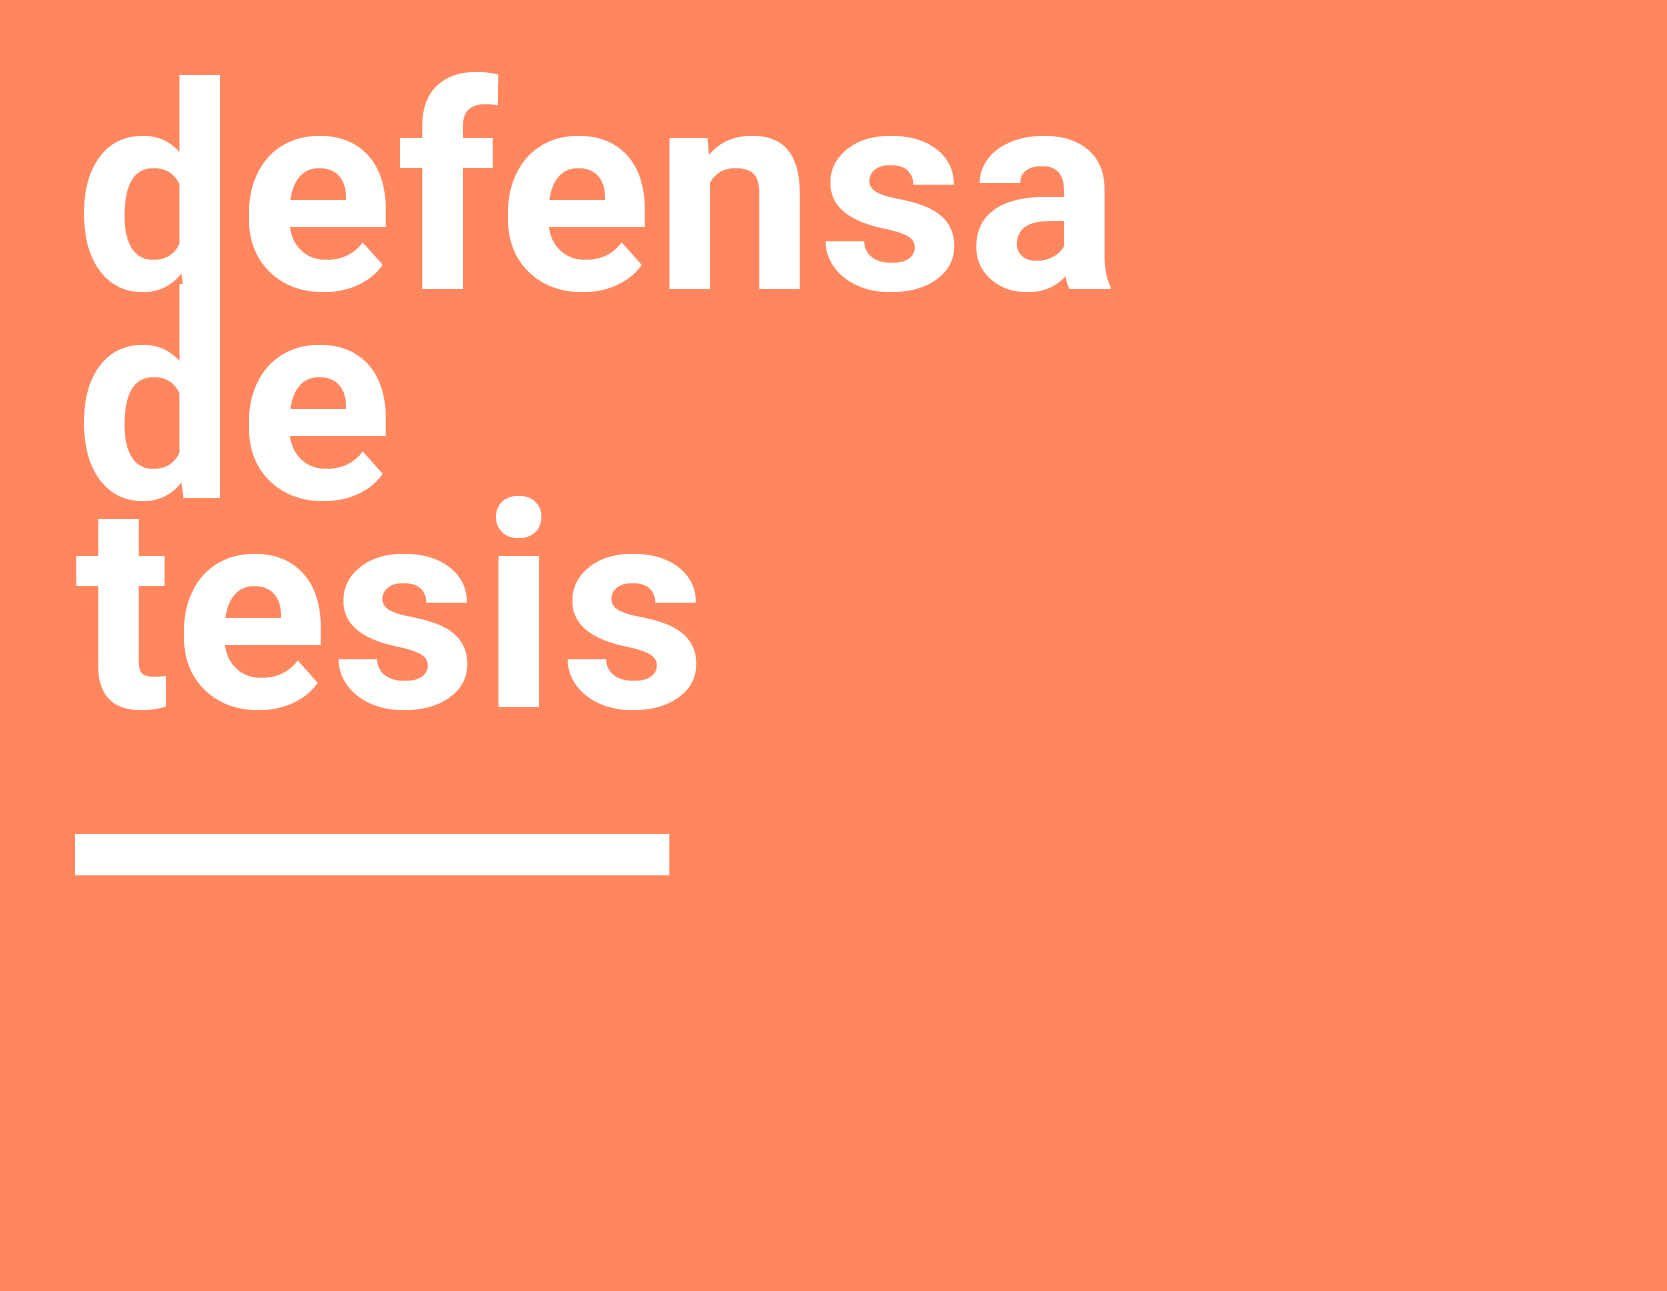 Defensa de Tesis | Angélica Zabala Núñez